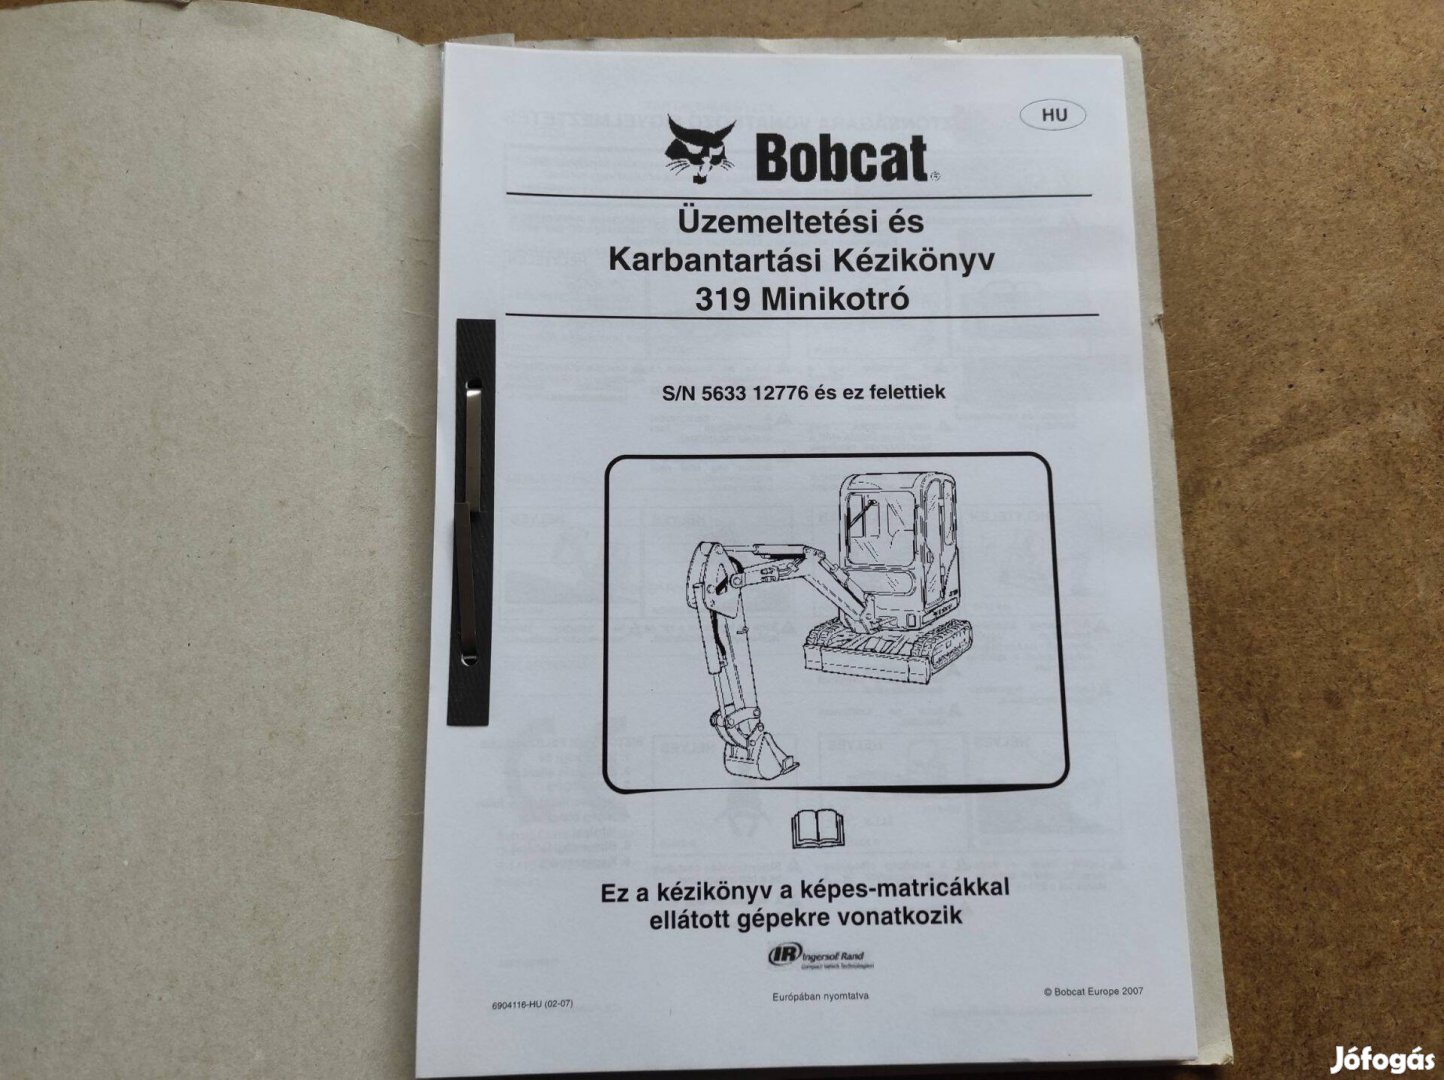 Bobcat 319 minikotró üzemeltetési, gépkönyv